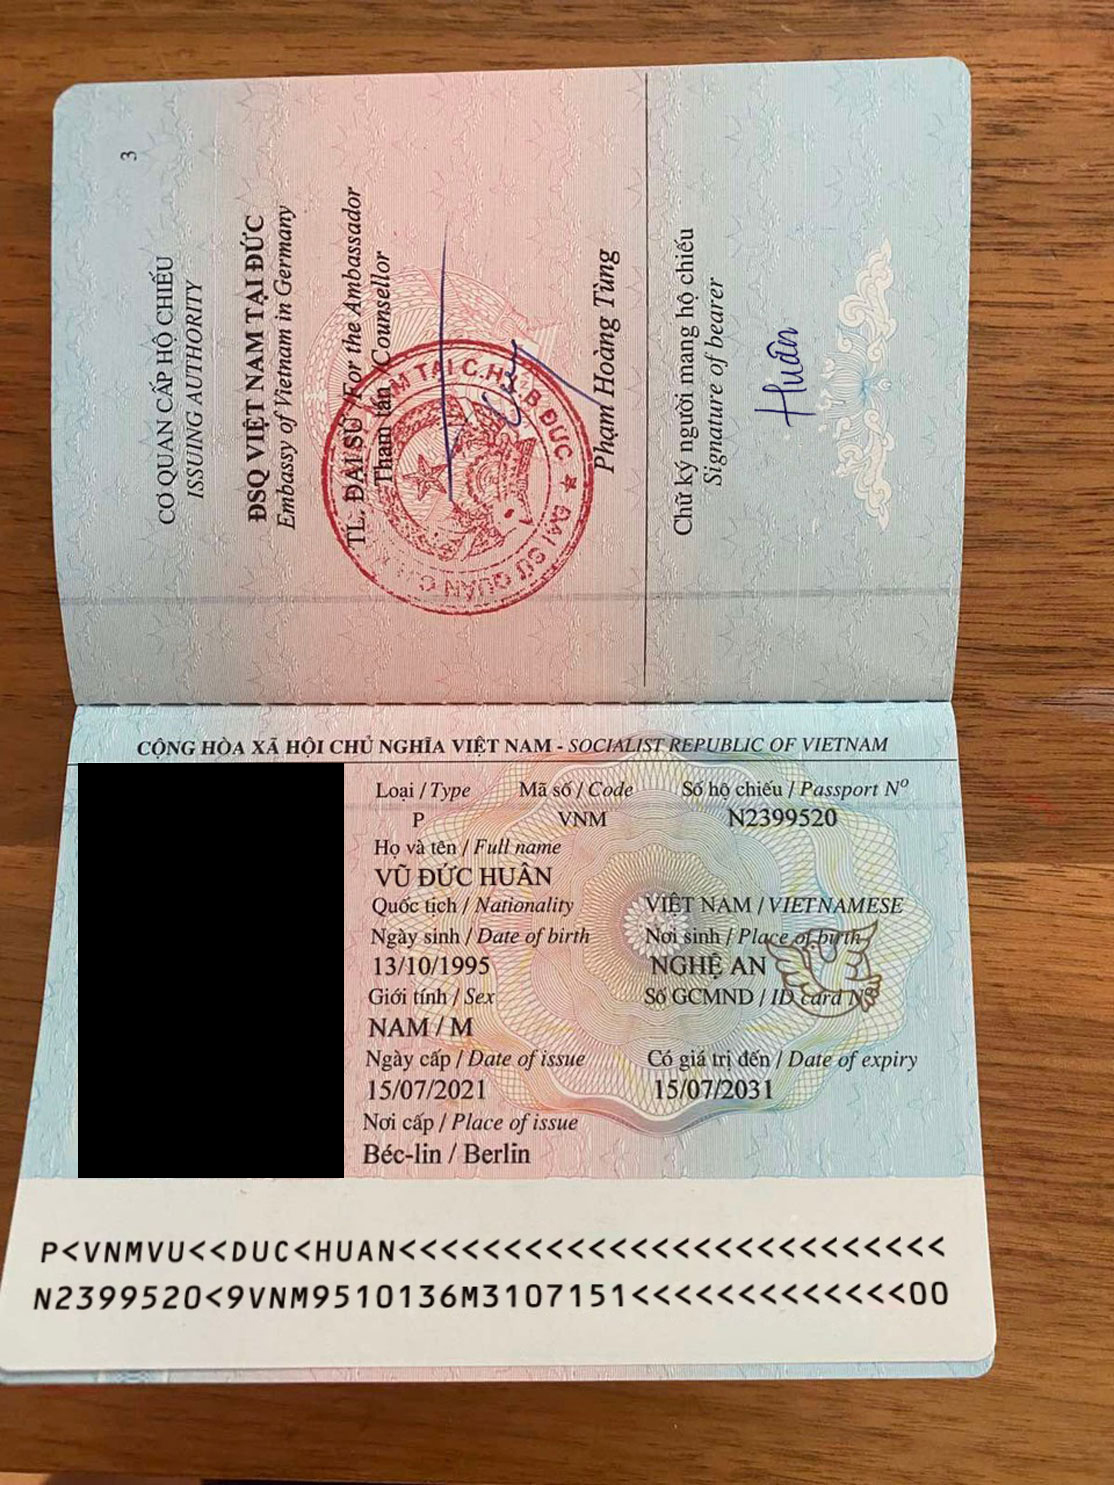 Passport fake